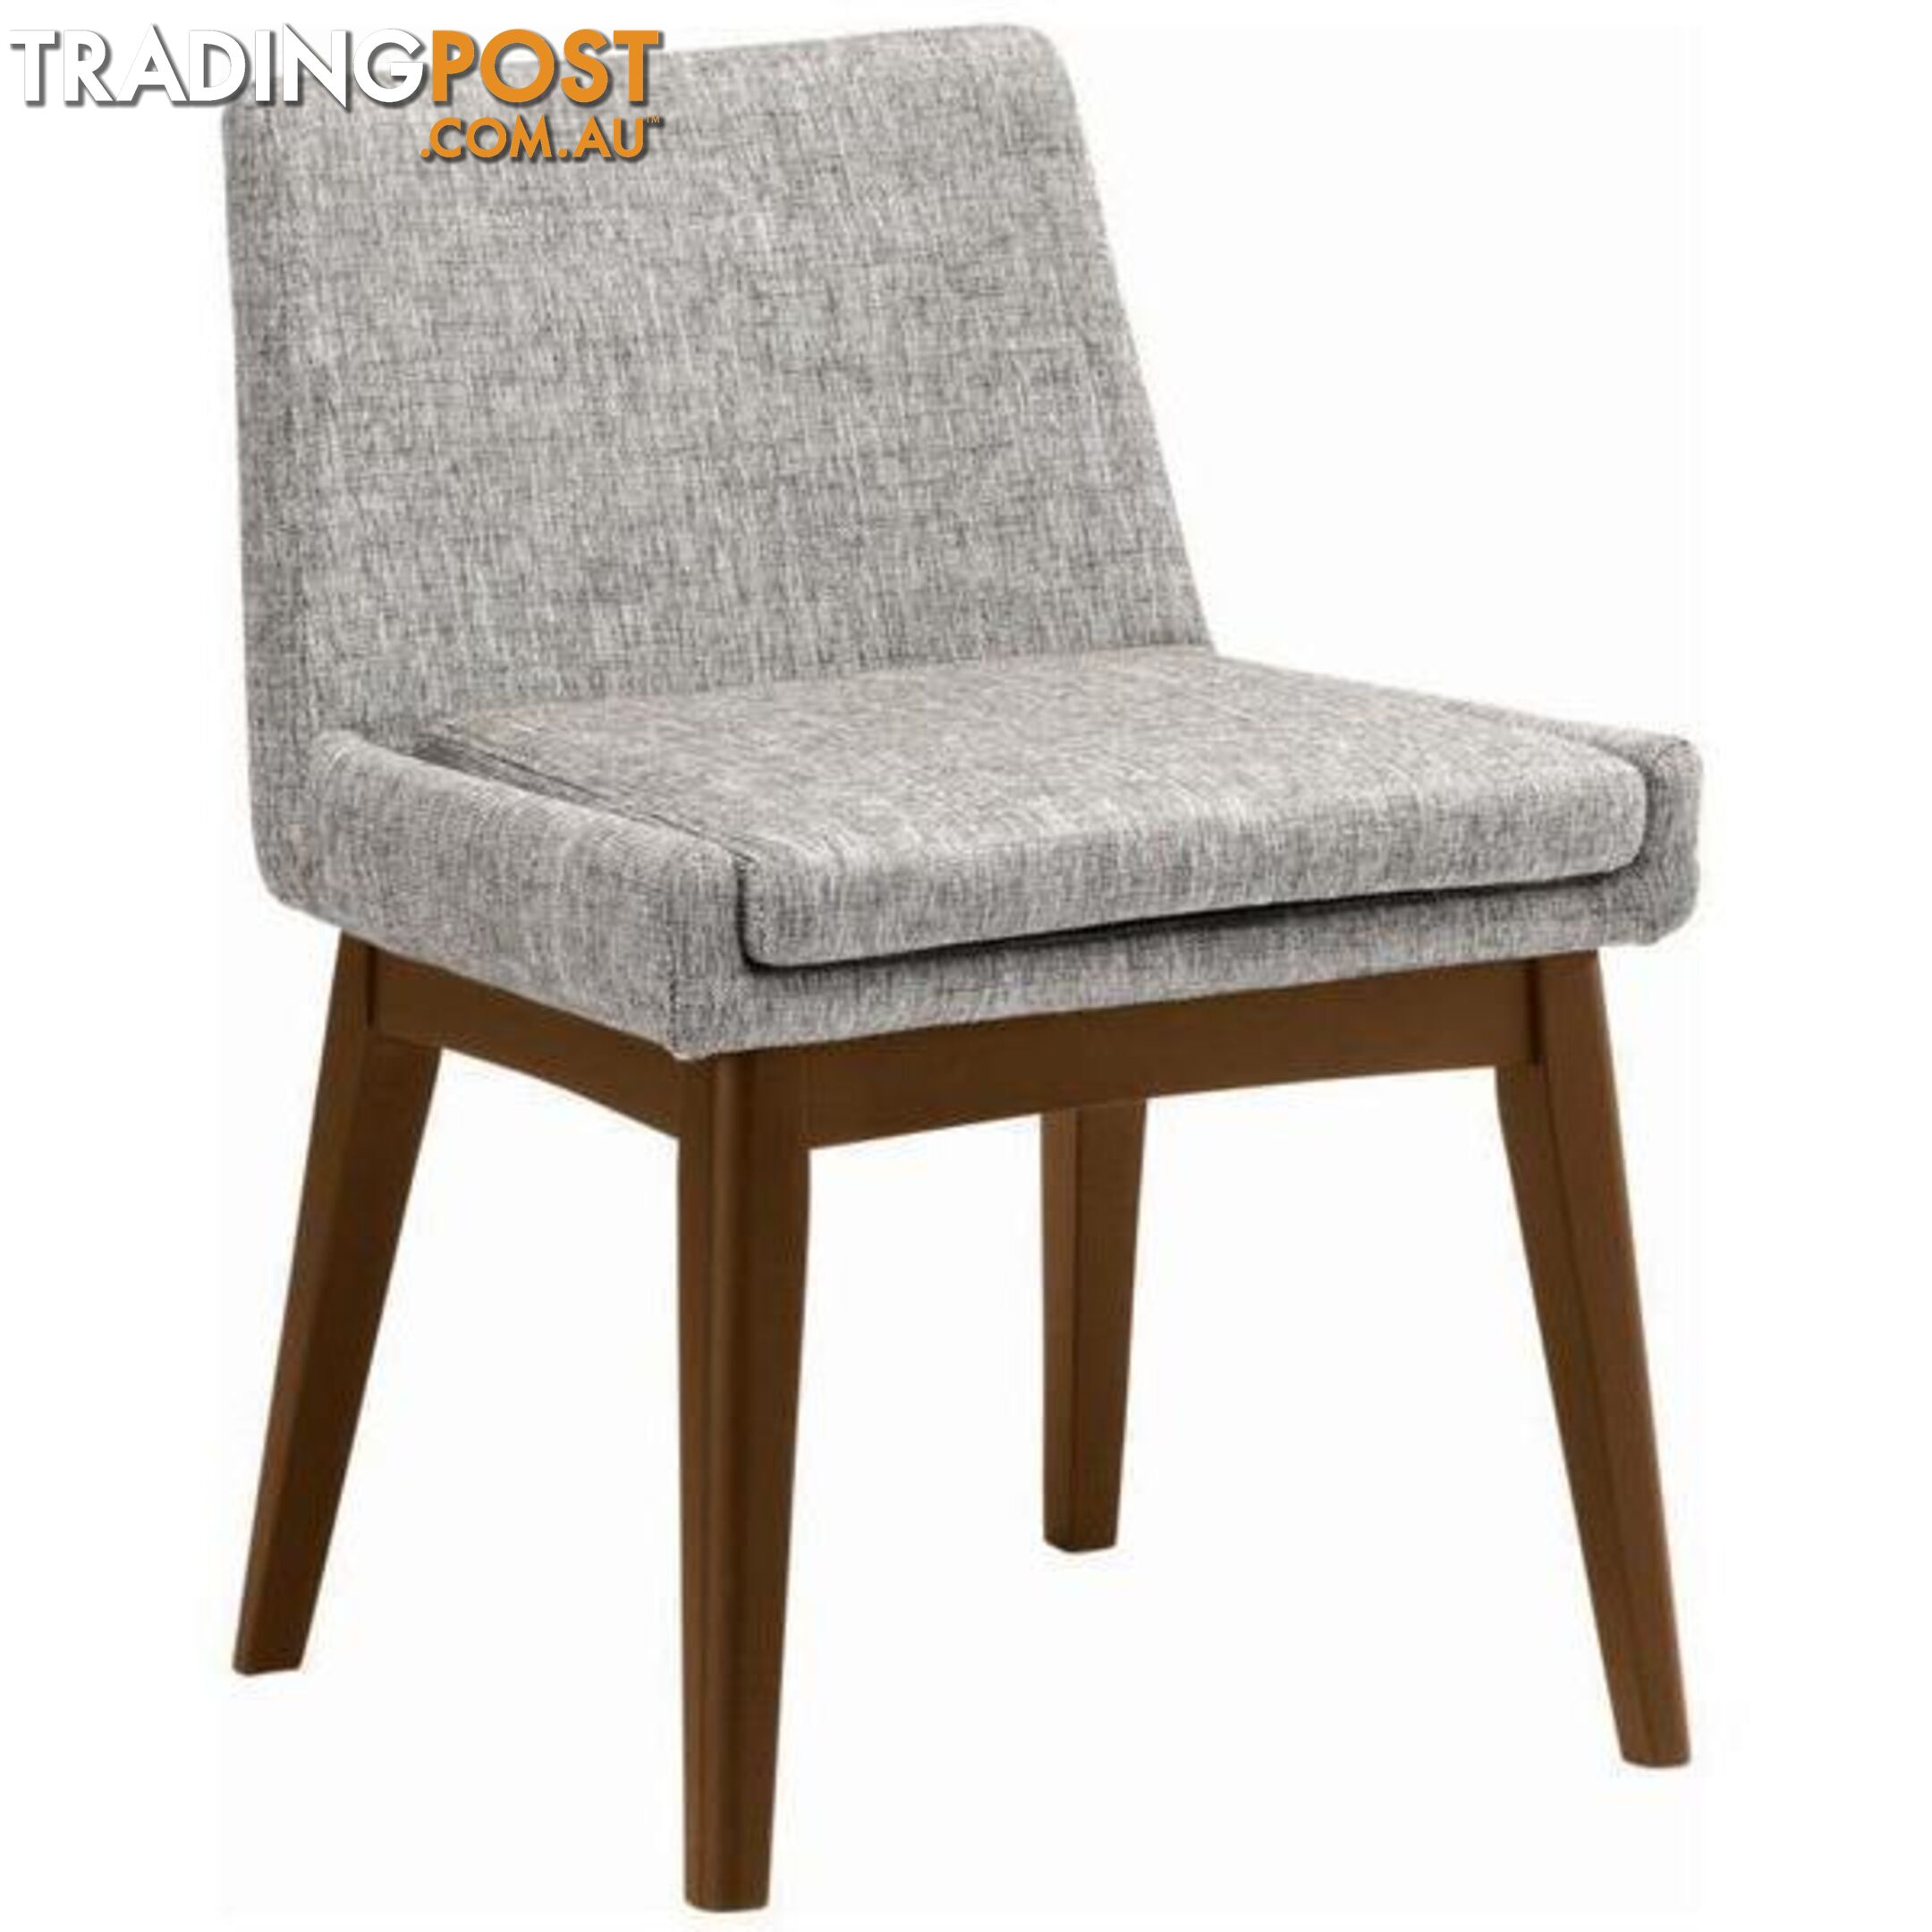 MAYA Dining Chair - Cocoa + Pebble Grey - MAYA_DC109-6005 - 9334719003092